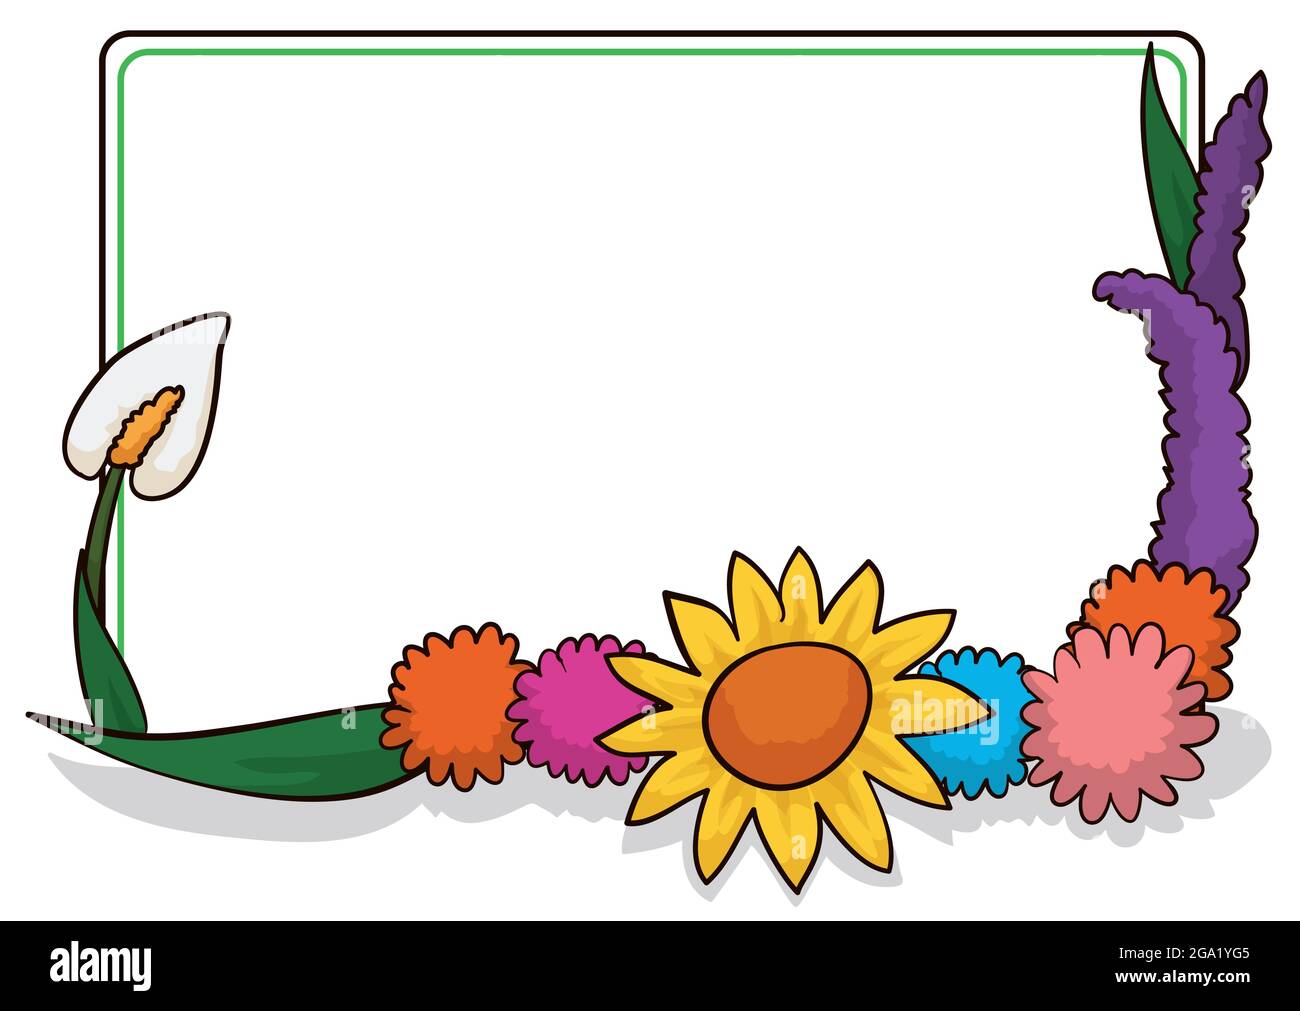 Sagoma vuota quadrata decorata con foglie e fiori: Anthuriums, pom, daisy e lavanda in stile cartoon, isolato su sfondo bianco Illustrazione Vettoriale